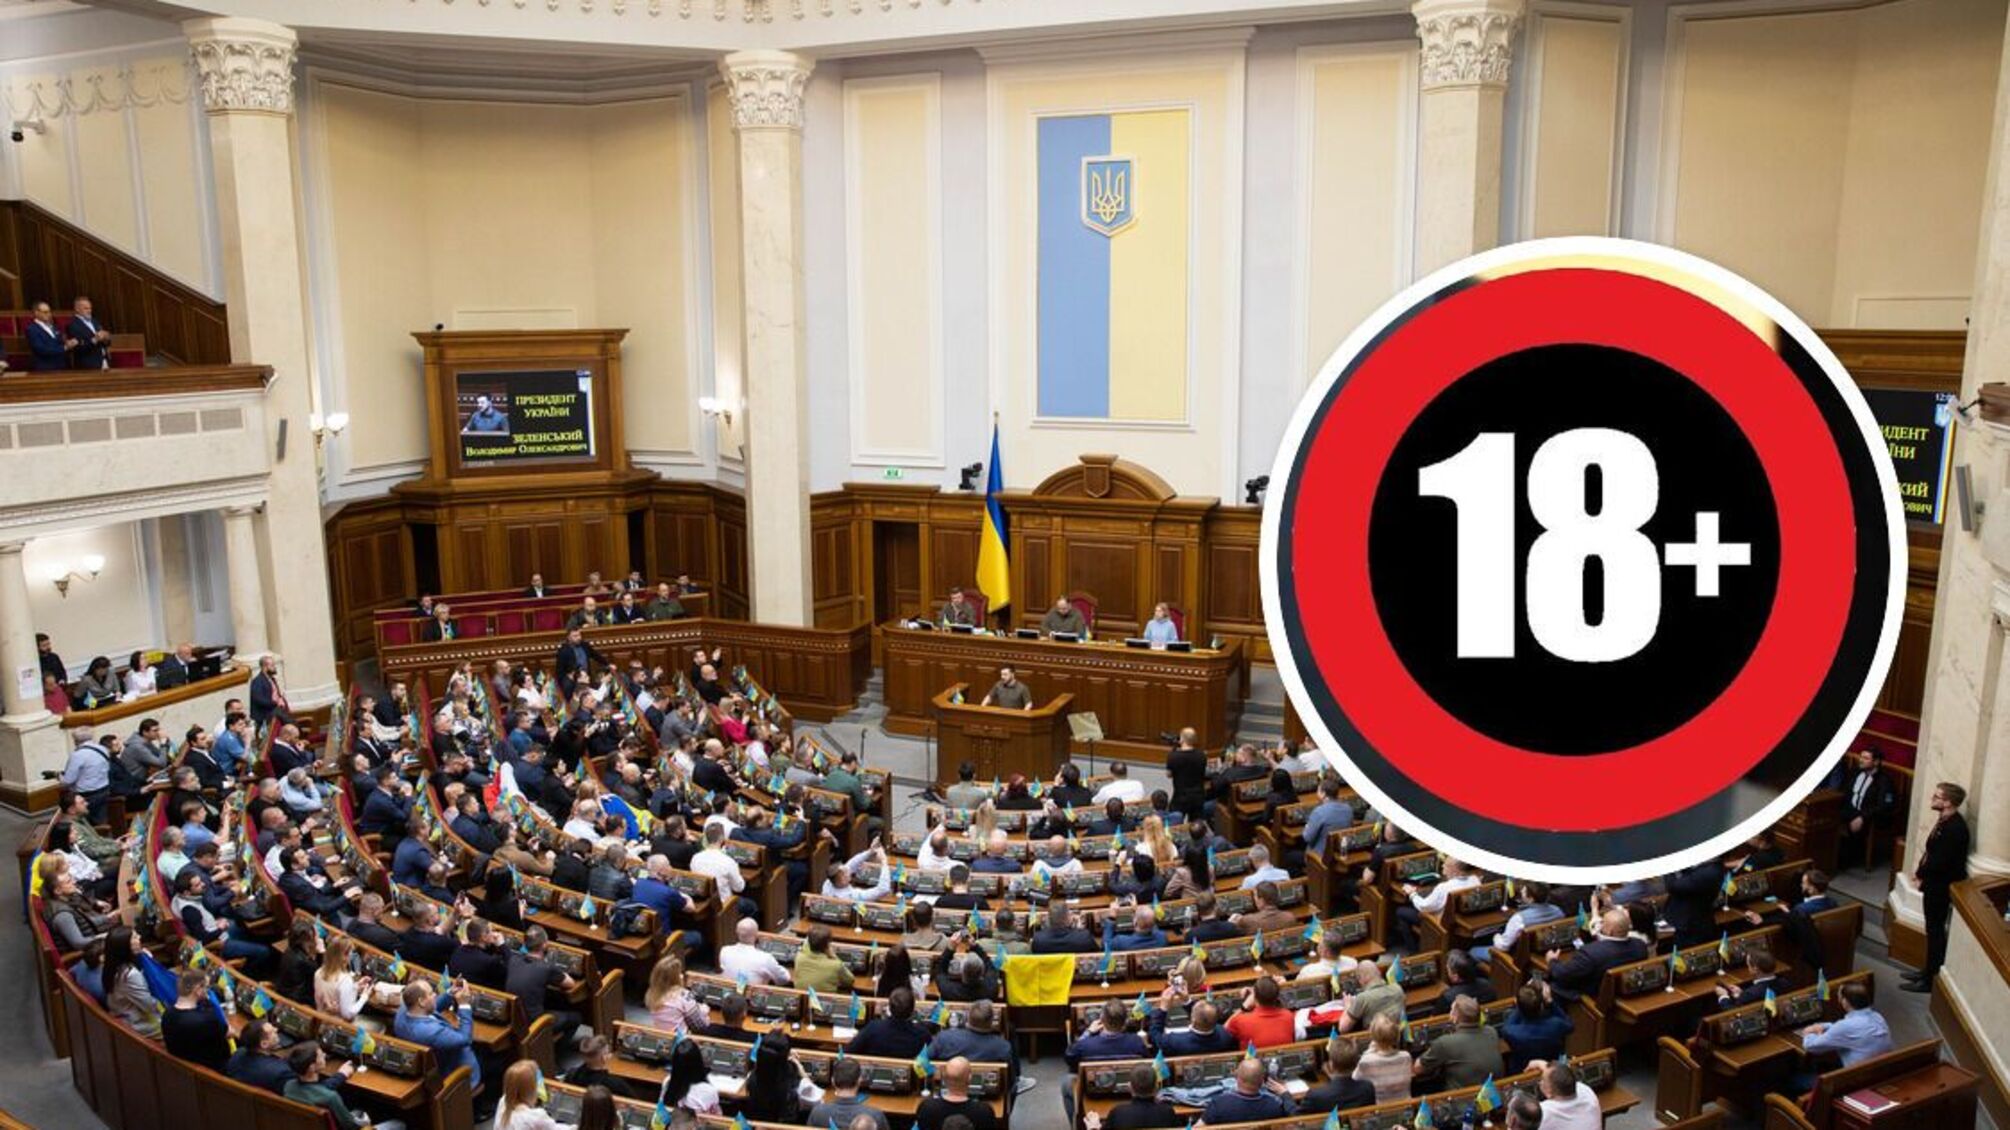 Контент для дорослих узаконять: в Україні пропонують декриміналізувати відео 18+